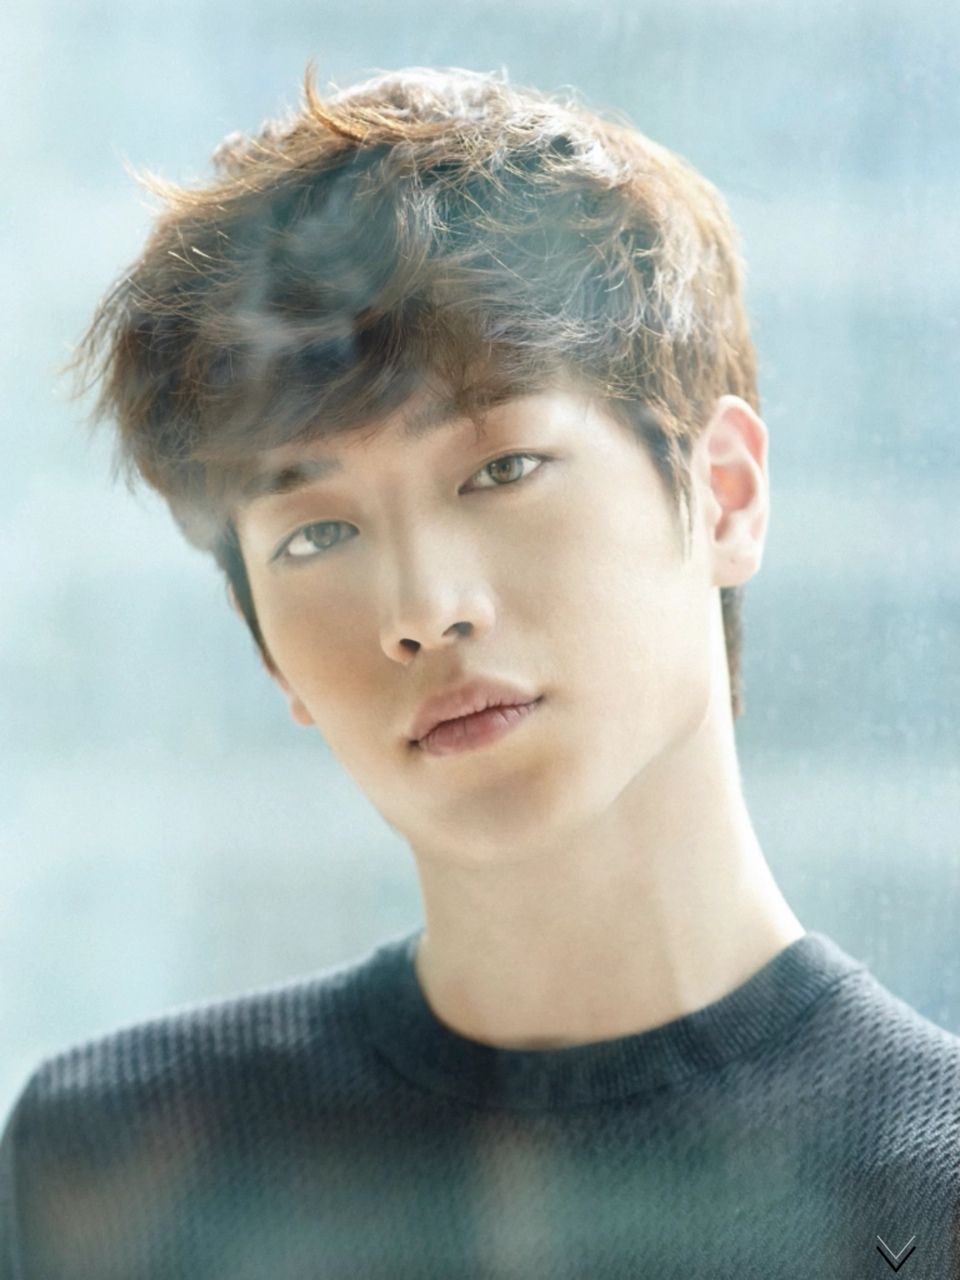 20 Fakta Seo Kang Joon, Pemilik Mata Coklat yang Memukau